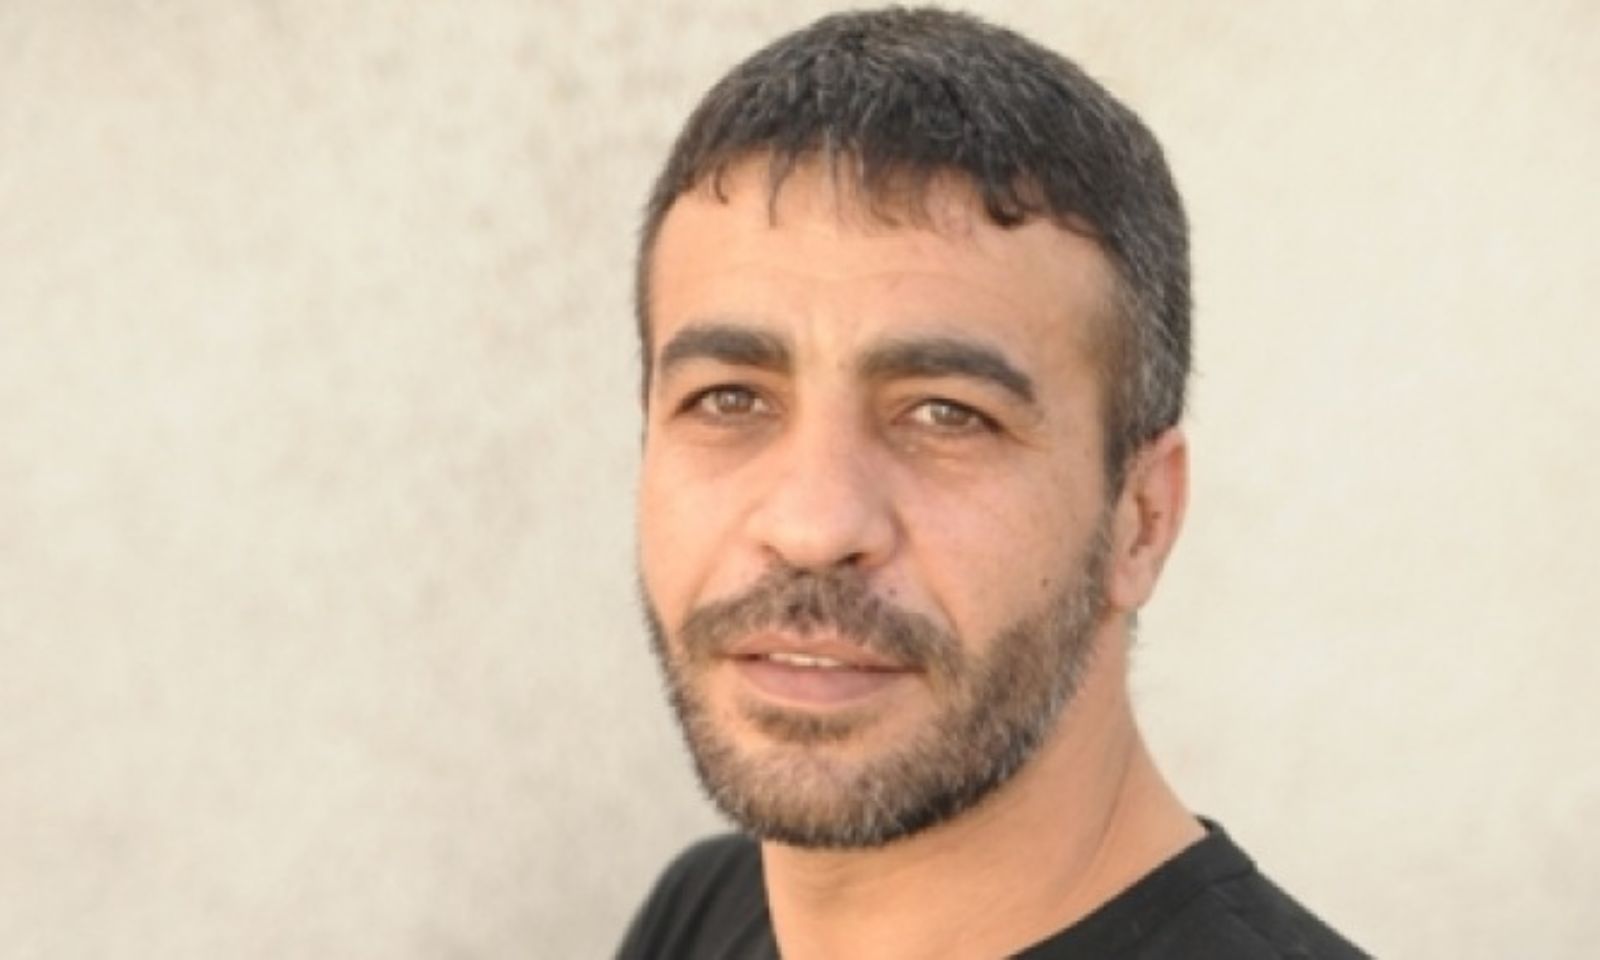 شقيق الأسير أبو حميد: تحسن طفيف على وضعه الصحي